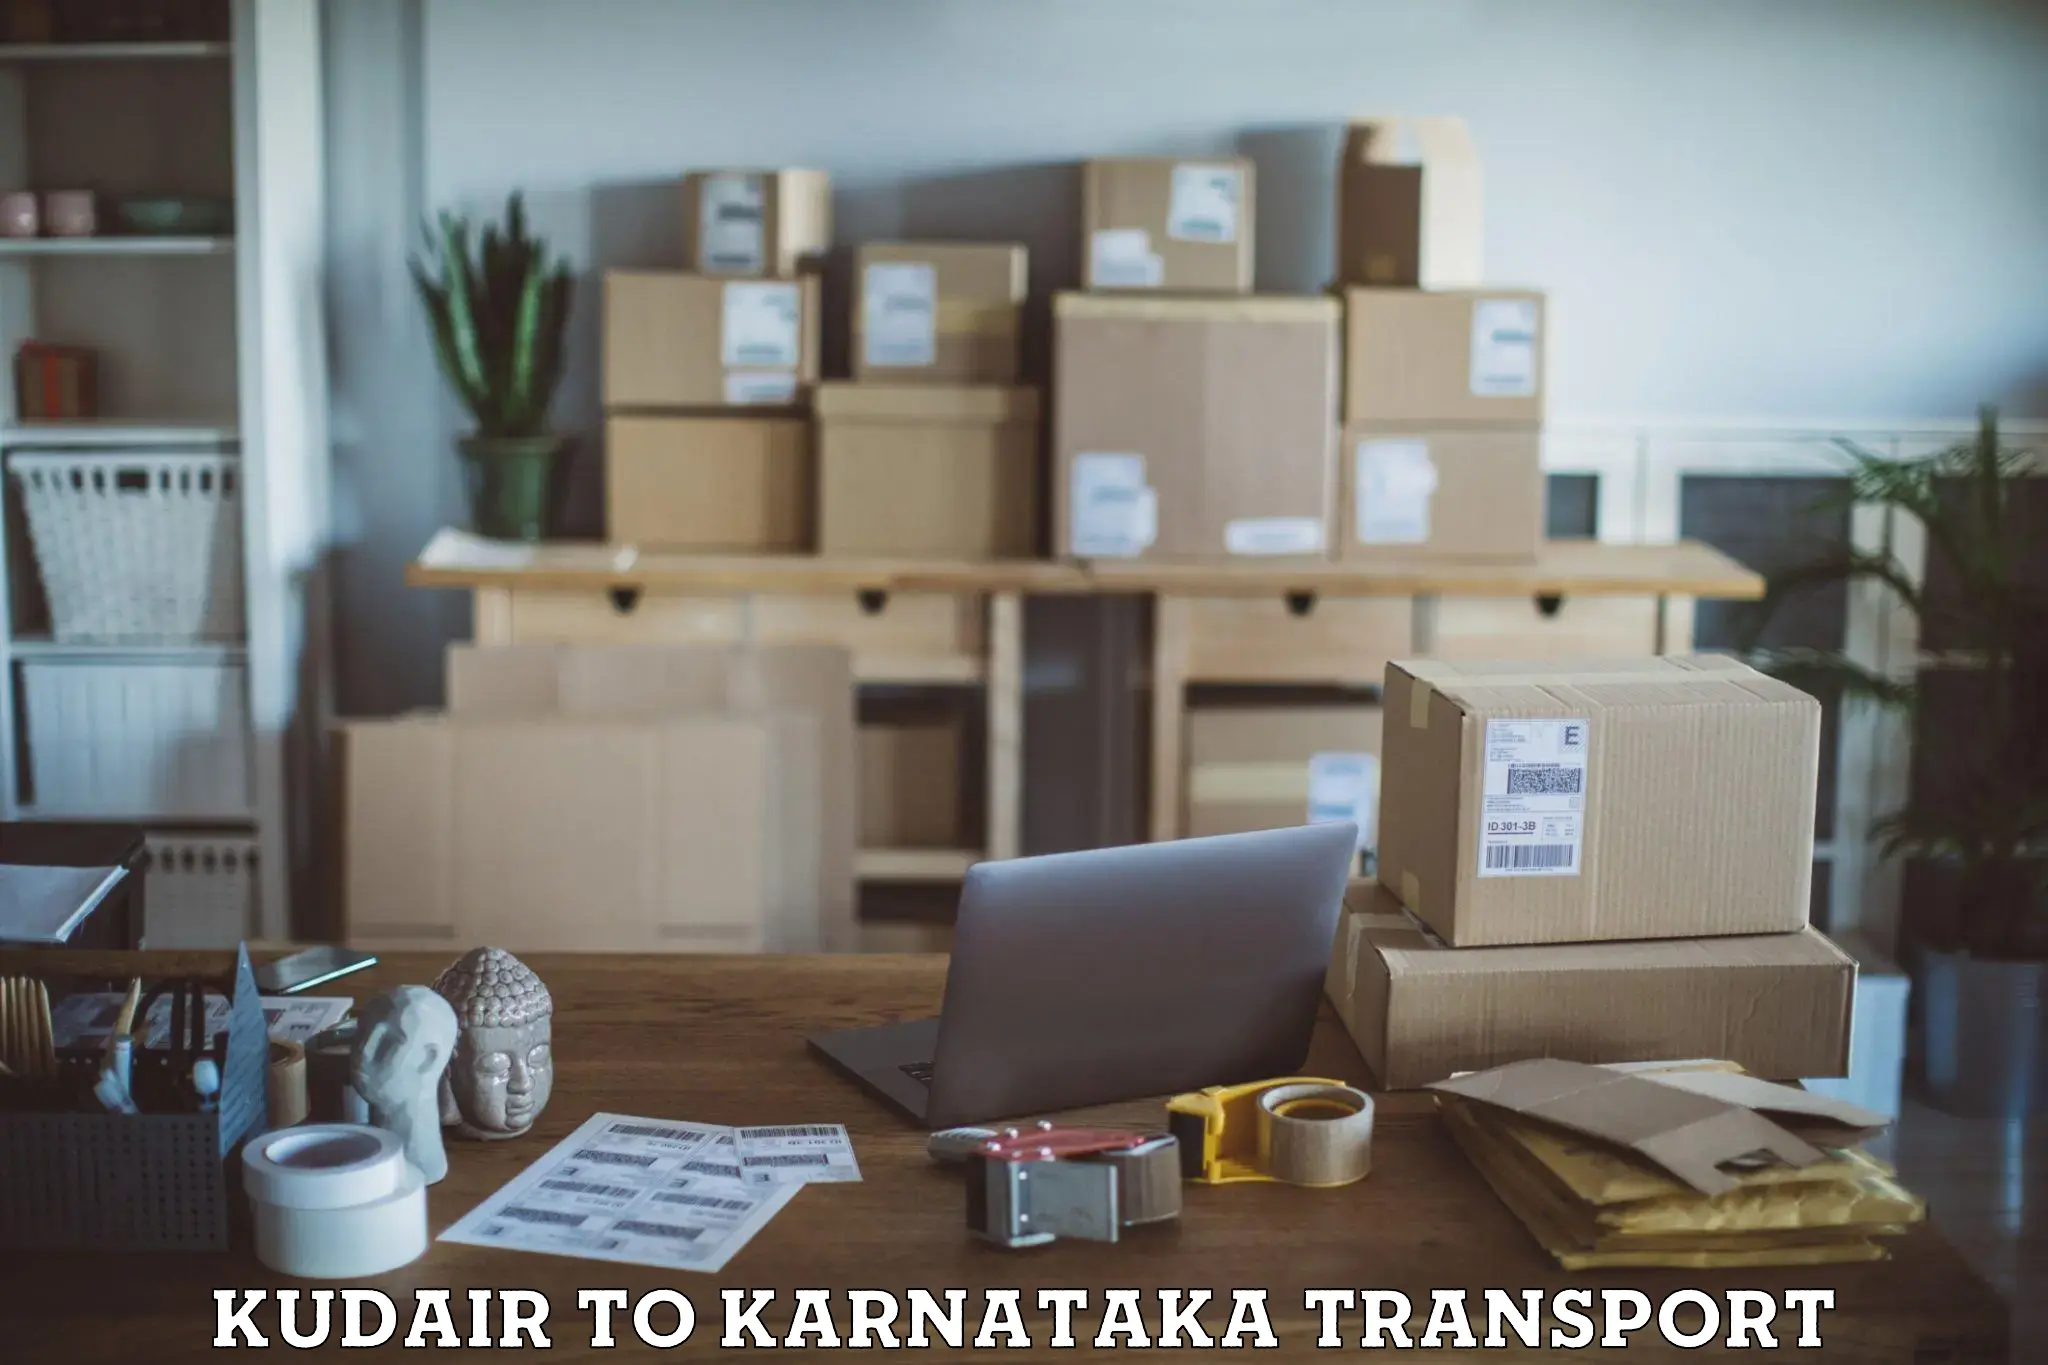 Furniture transport service Kudair to Karnataka